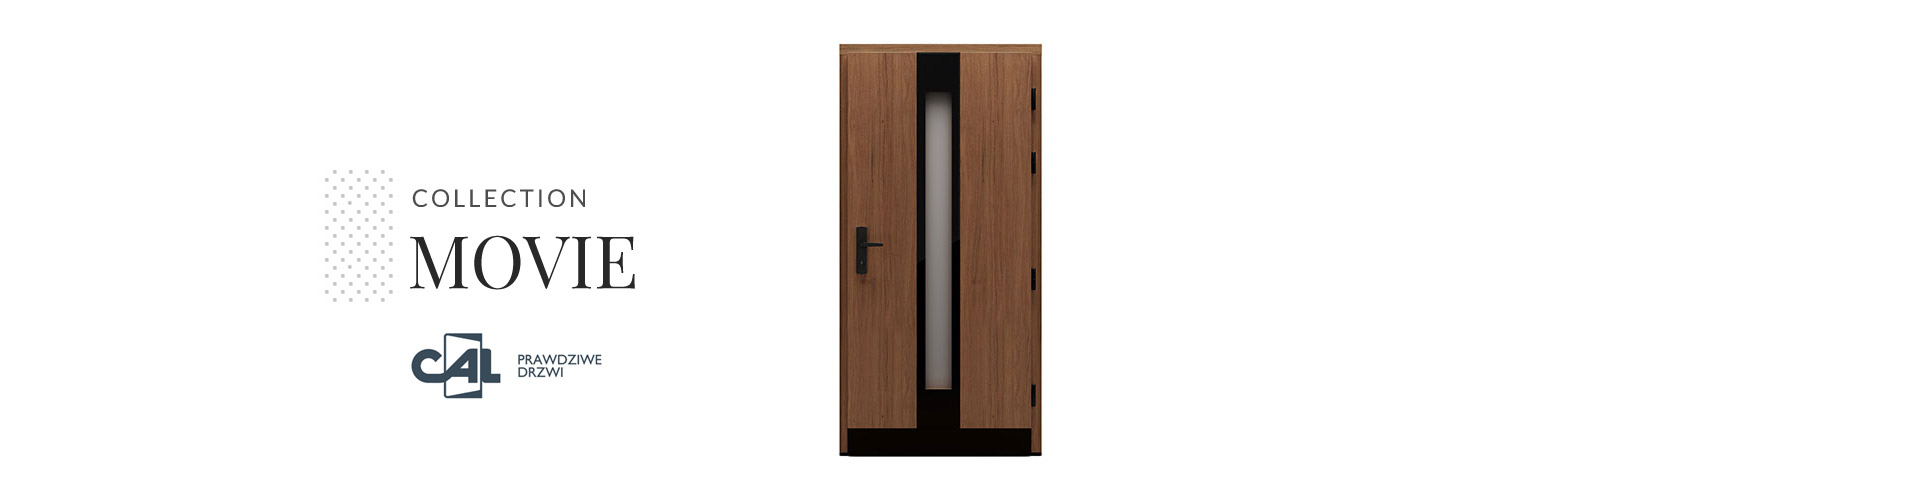 Wooden door, Movie Collection